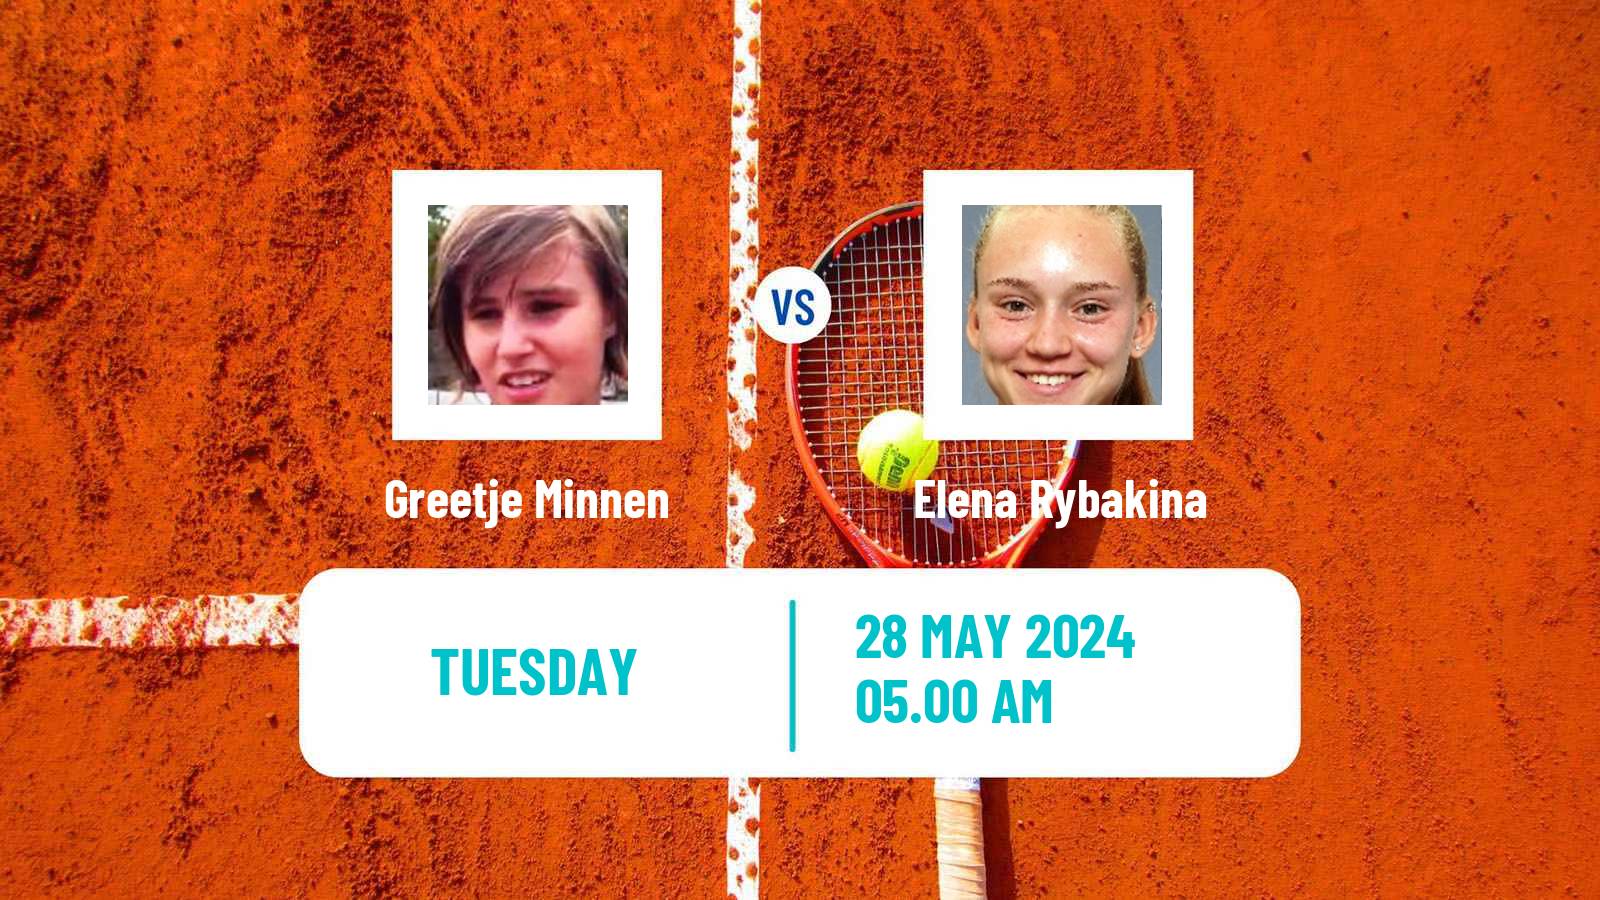 Tennis WTA Roland Garros Greetje Minnen - Elena Rybakina